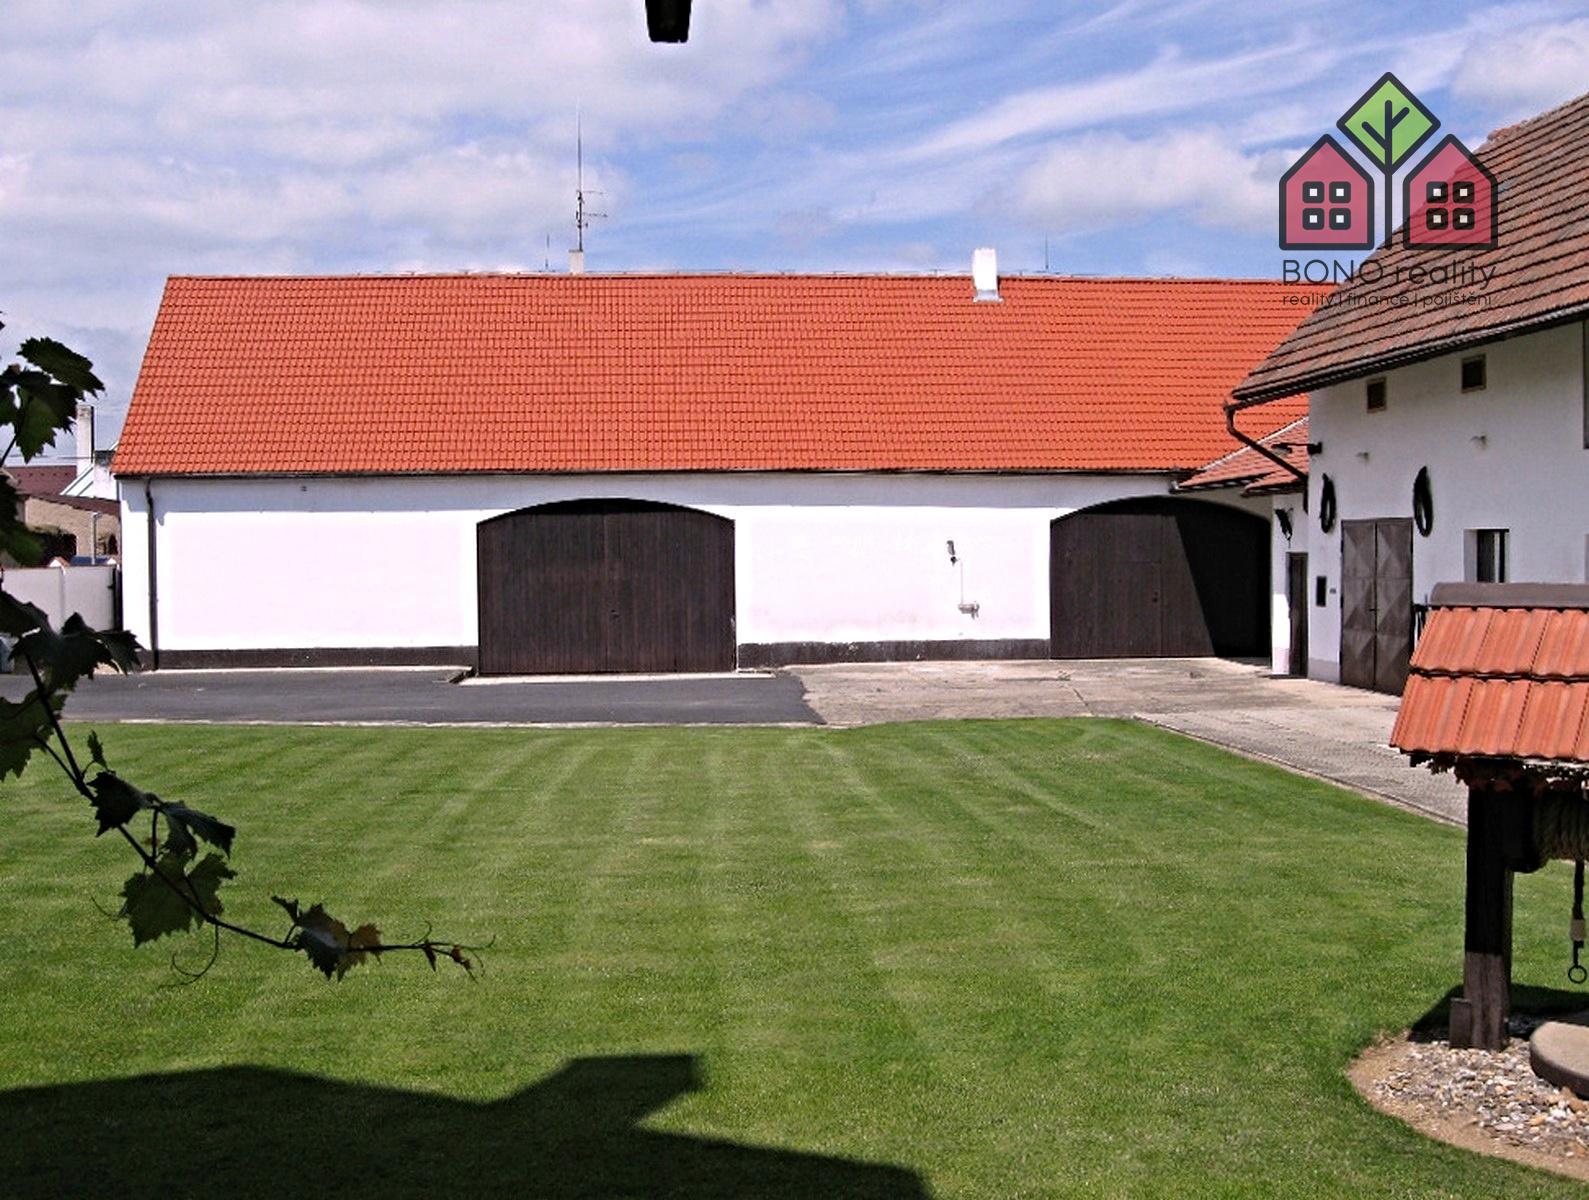 komerční nemovitost, pozemek 1962 m2, dvě stodoly, garáže, dva byty, okres Litoměřice, obec Travčice, obrázek č. 3